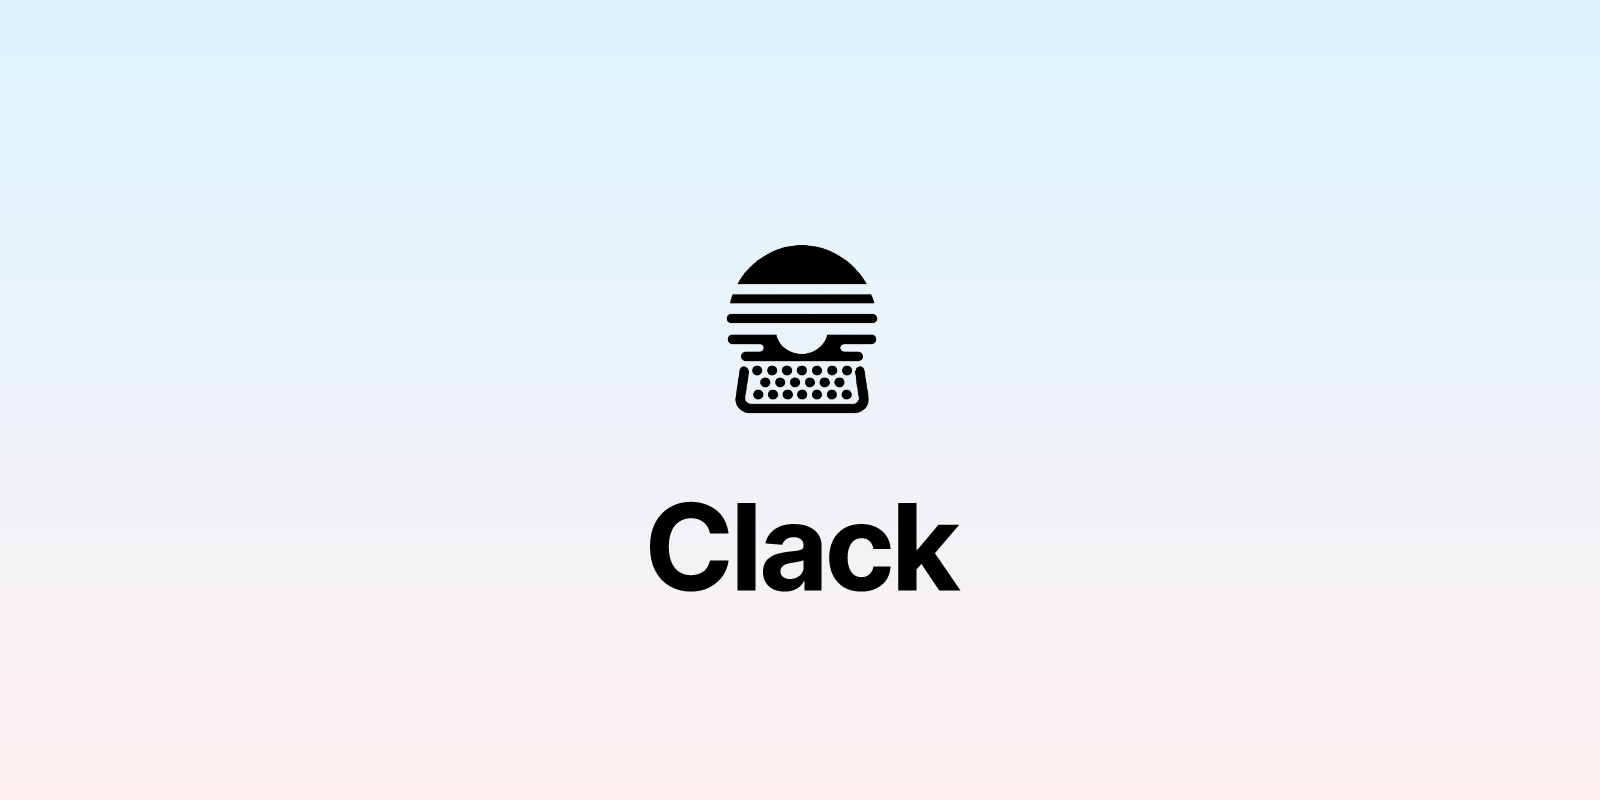 Clack